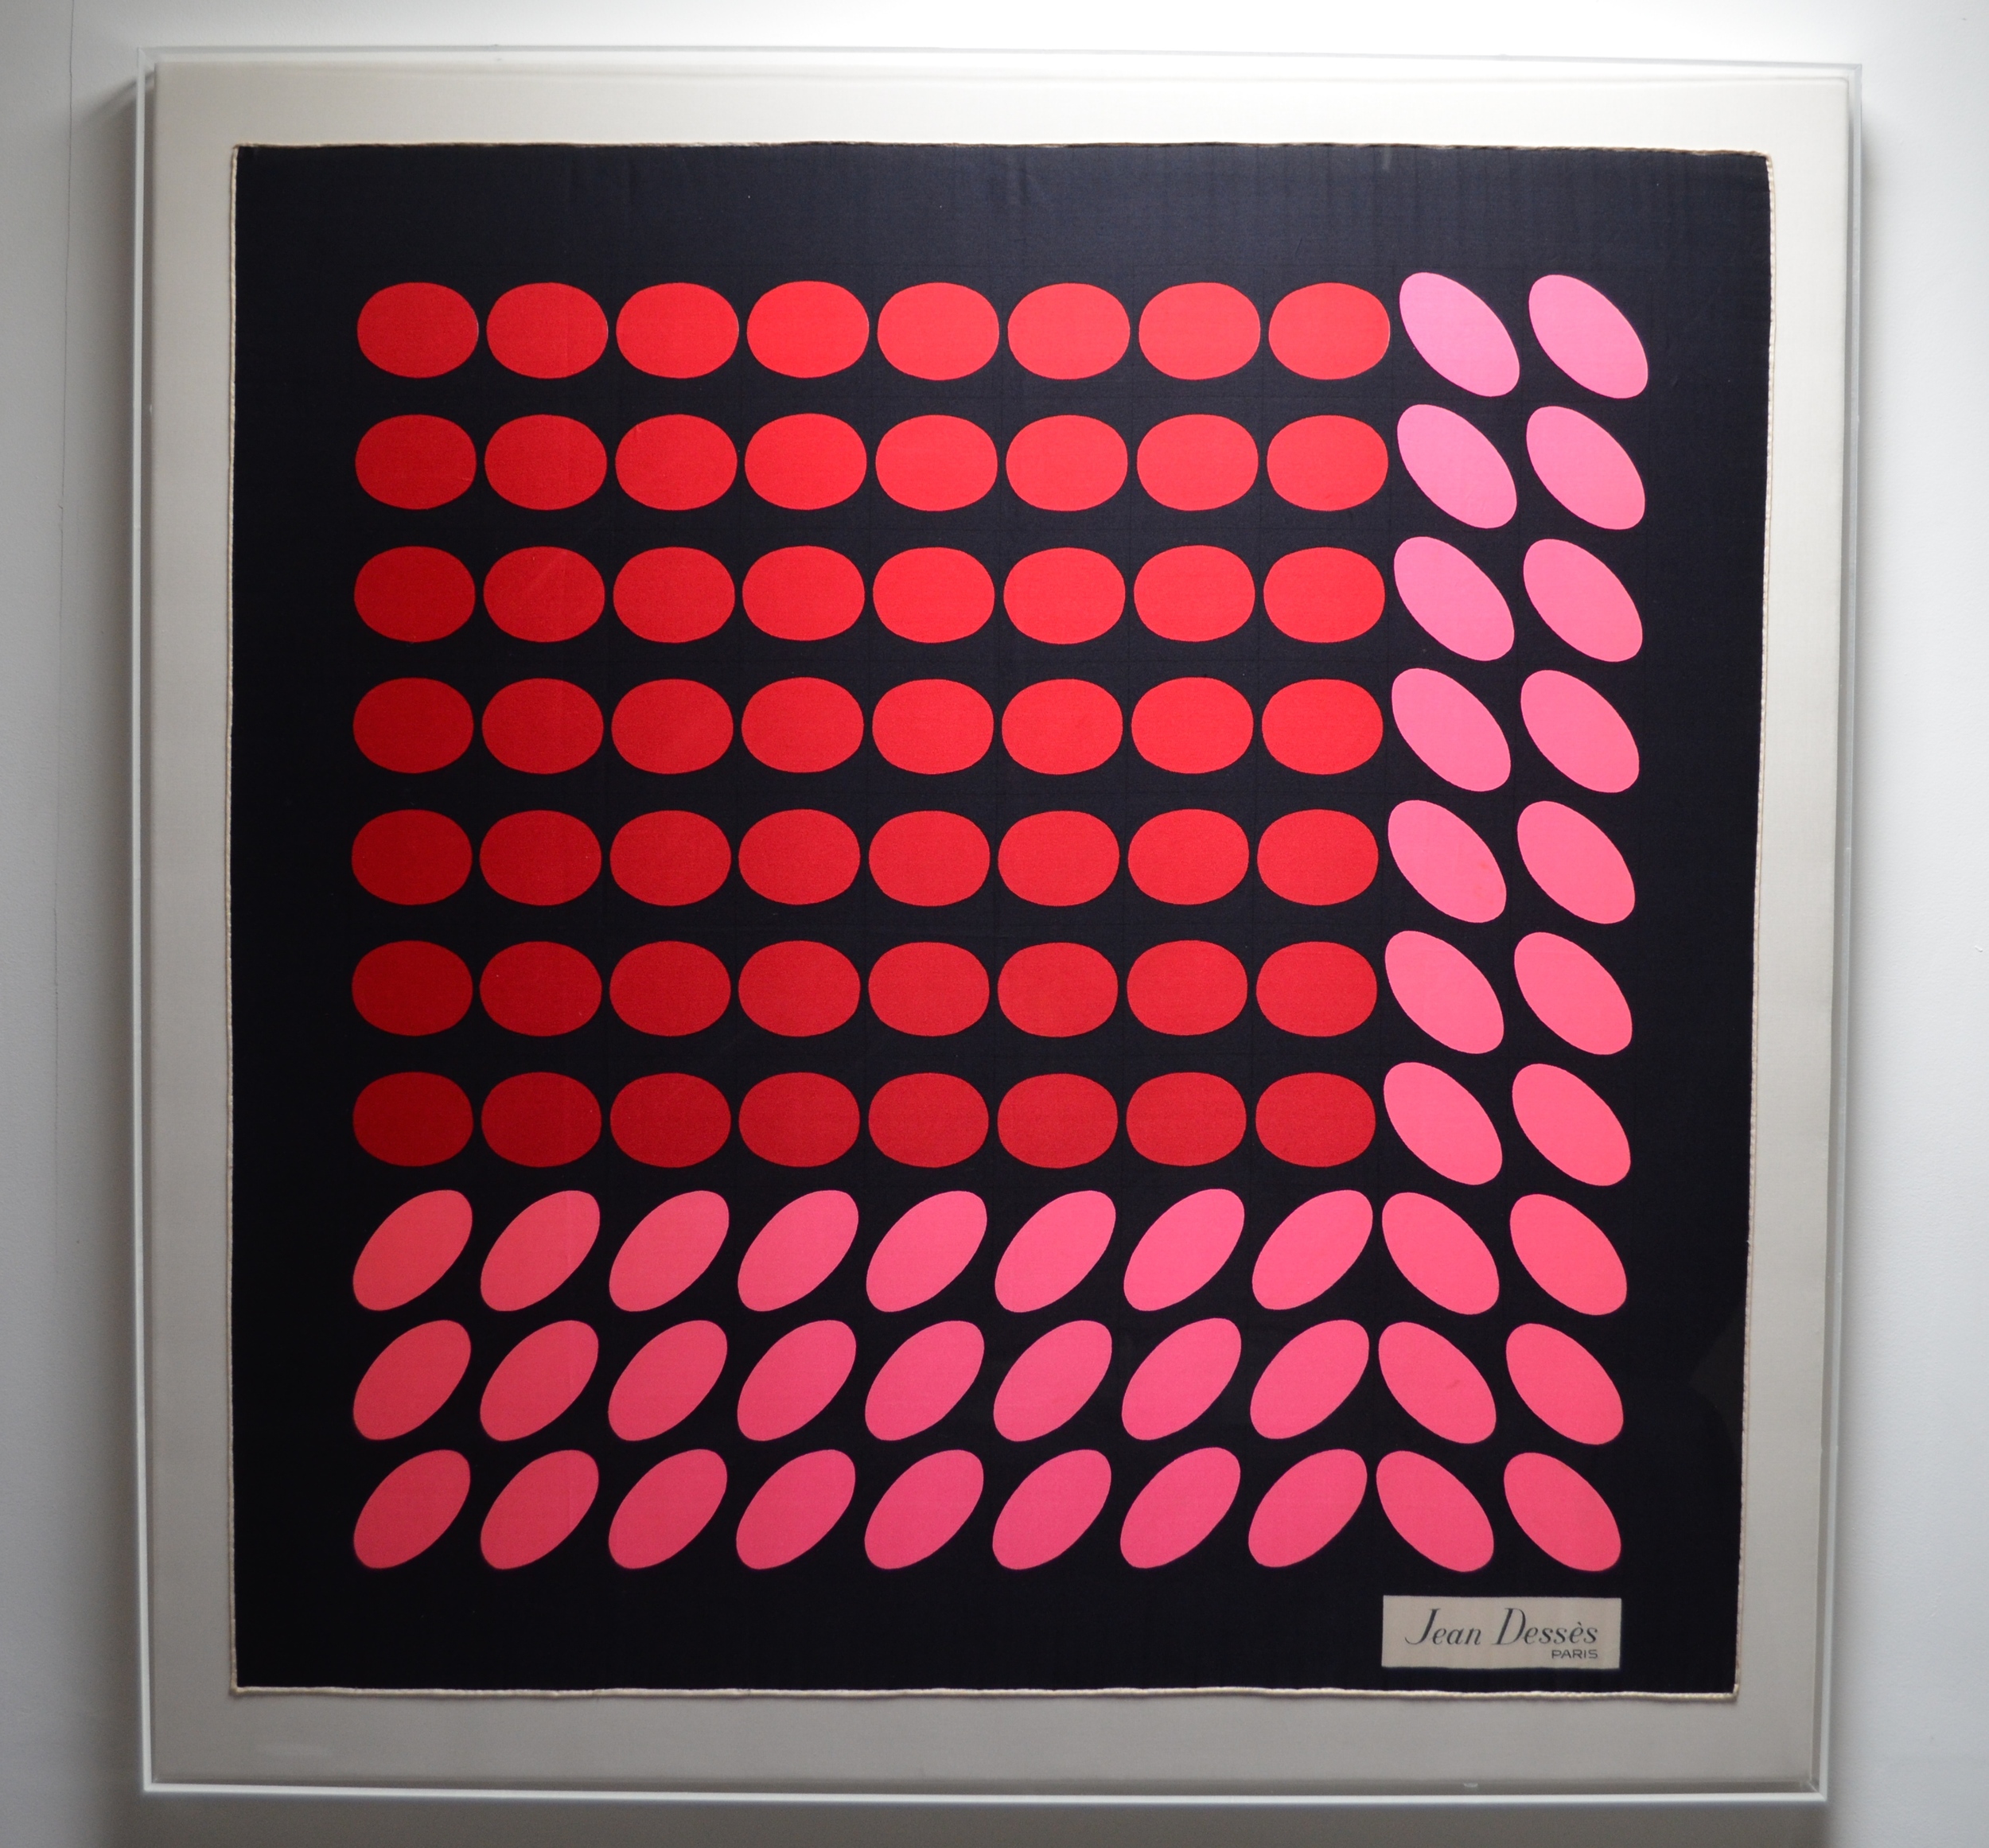   JEAN DESSE  Paris Pink spots 86.5 x88cm&nbsp; 